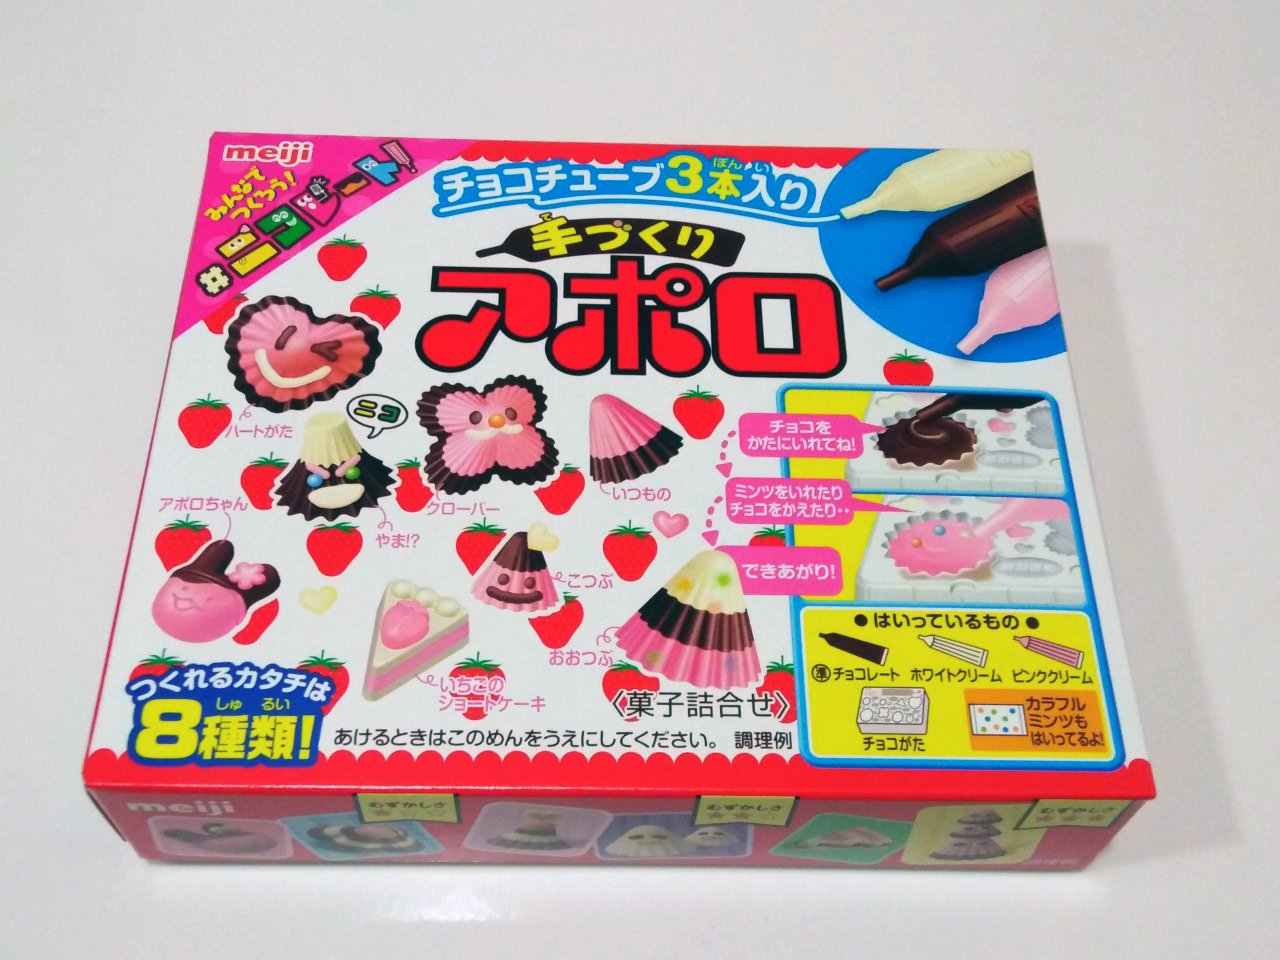 Japan Meiji Apollo DIY Strawberry Chocolate Candy Kit snacks sweet